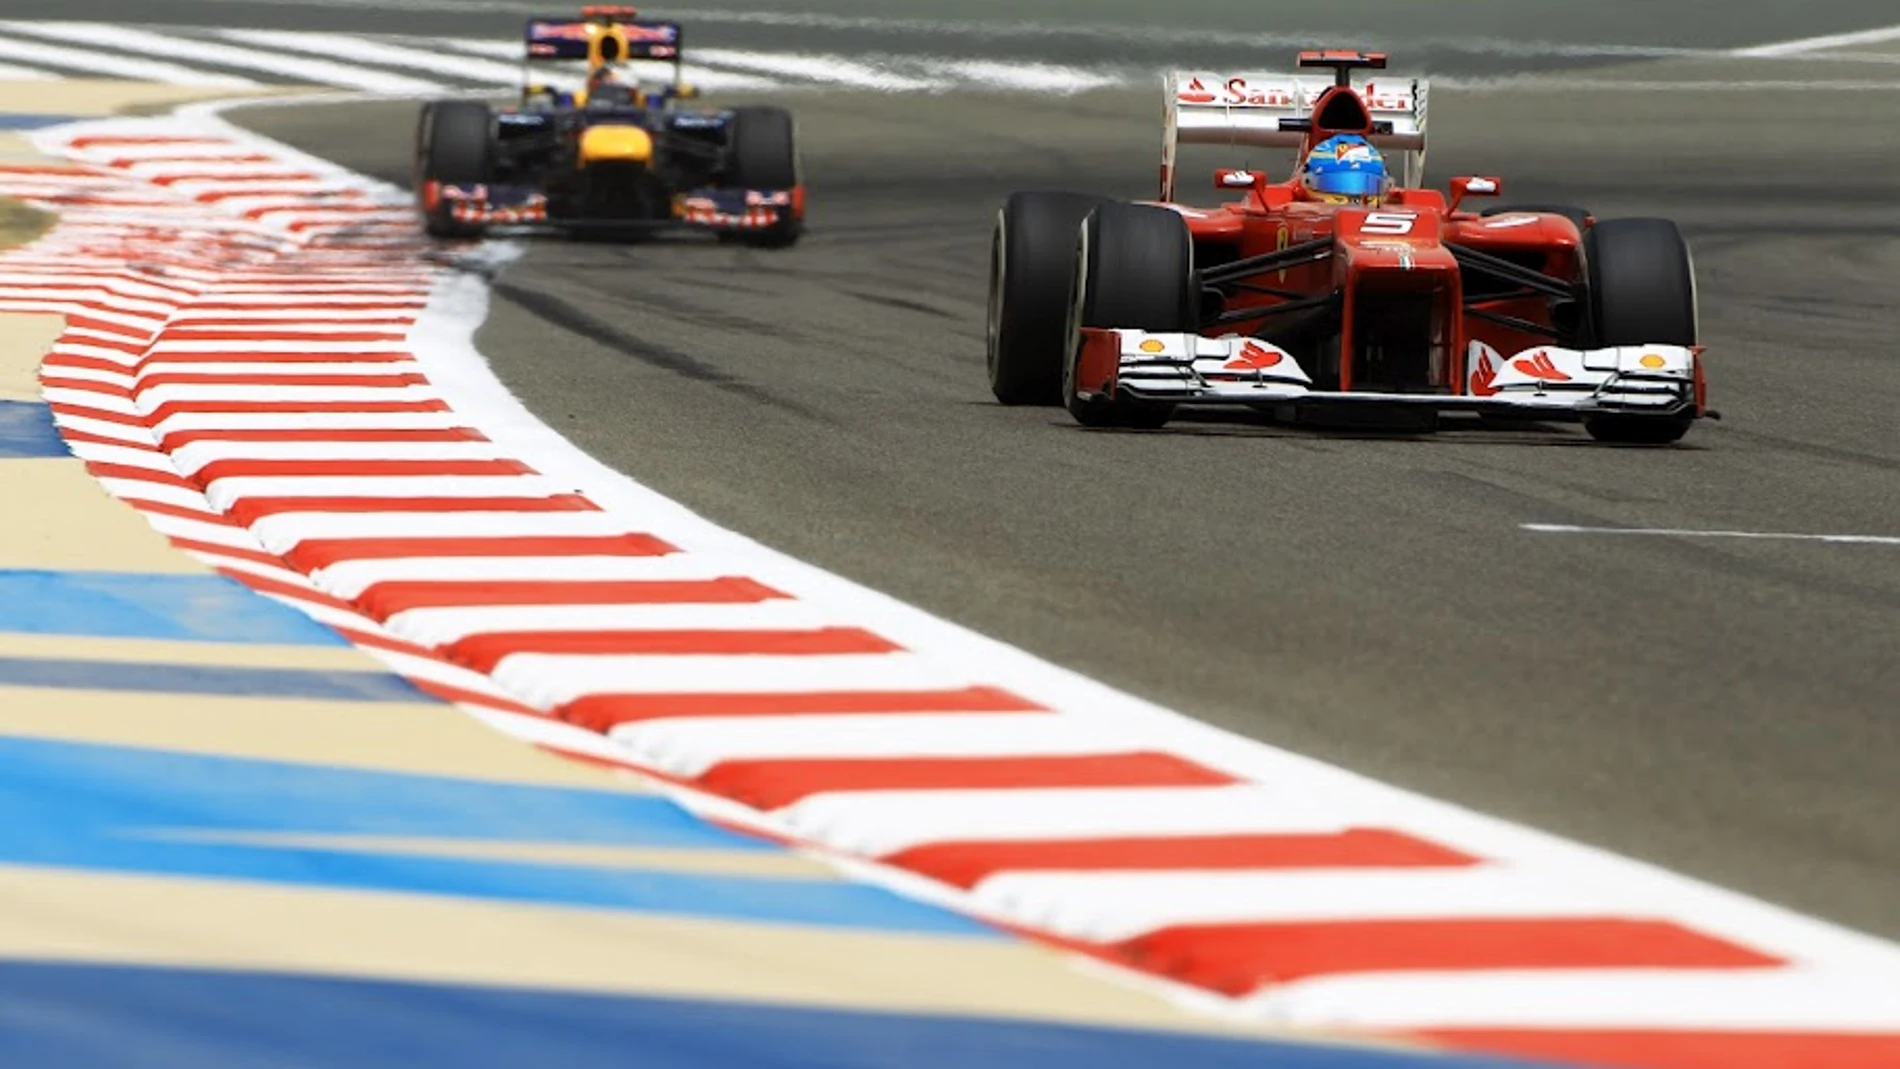 RB8 y F2012 en Bahréin